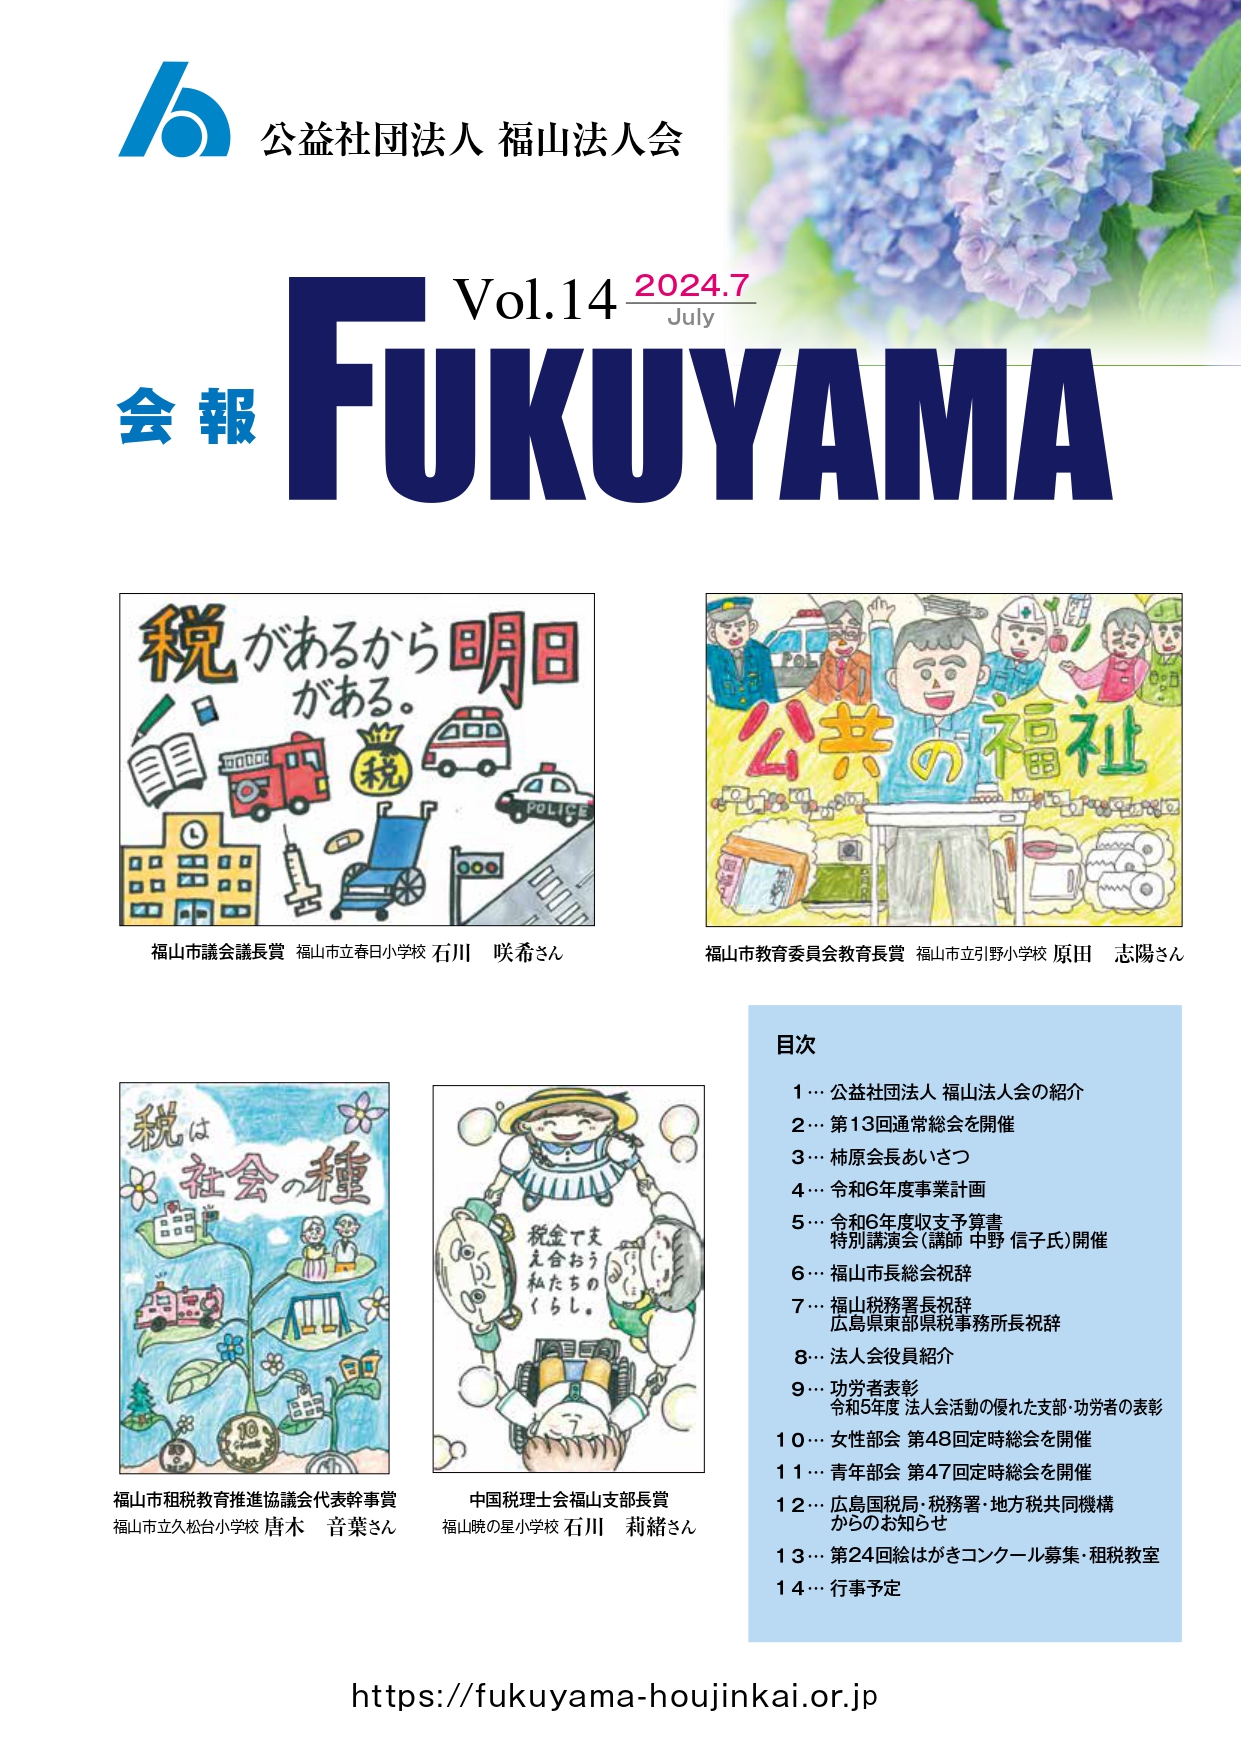 会報FUKUYAMA 2024 Vol.14